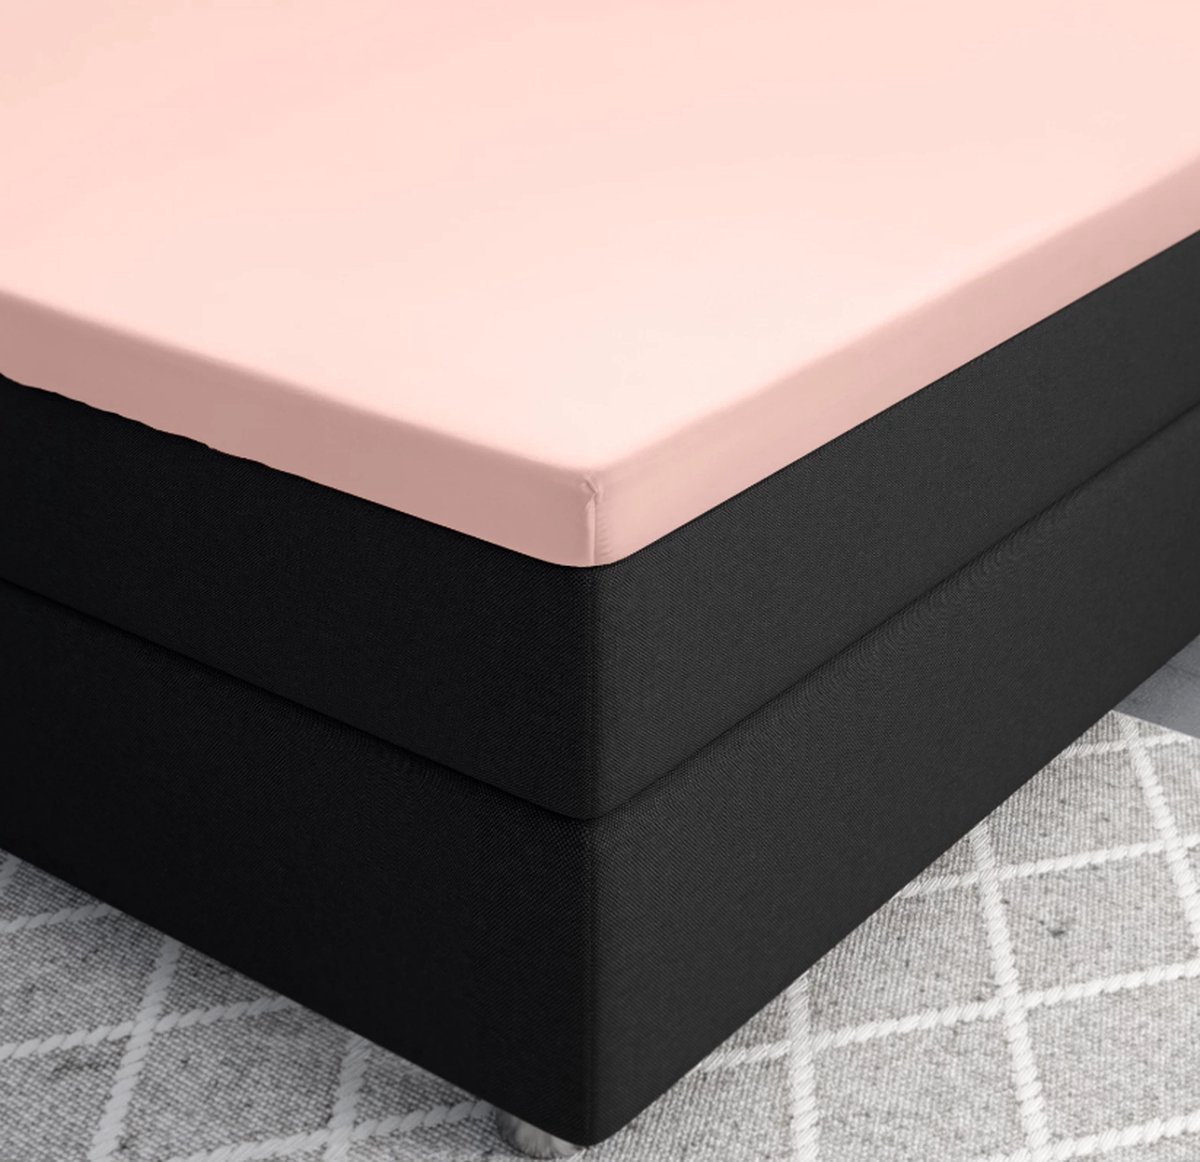 Premium katoen/satijn hoeslaken roze - 140x200 (tweepersoons) - zacht en ademend - luxe en chique uitstraling - subtiele glans - ideale pasvorm